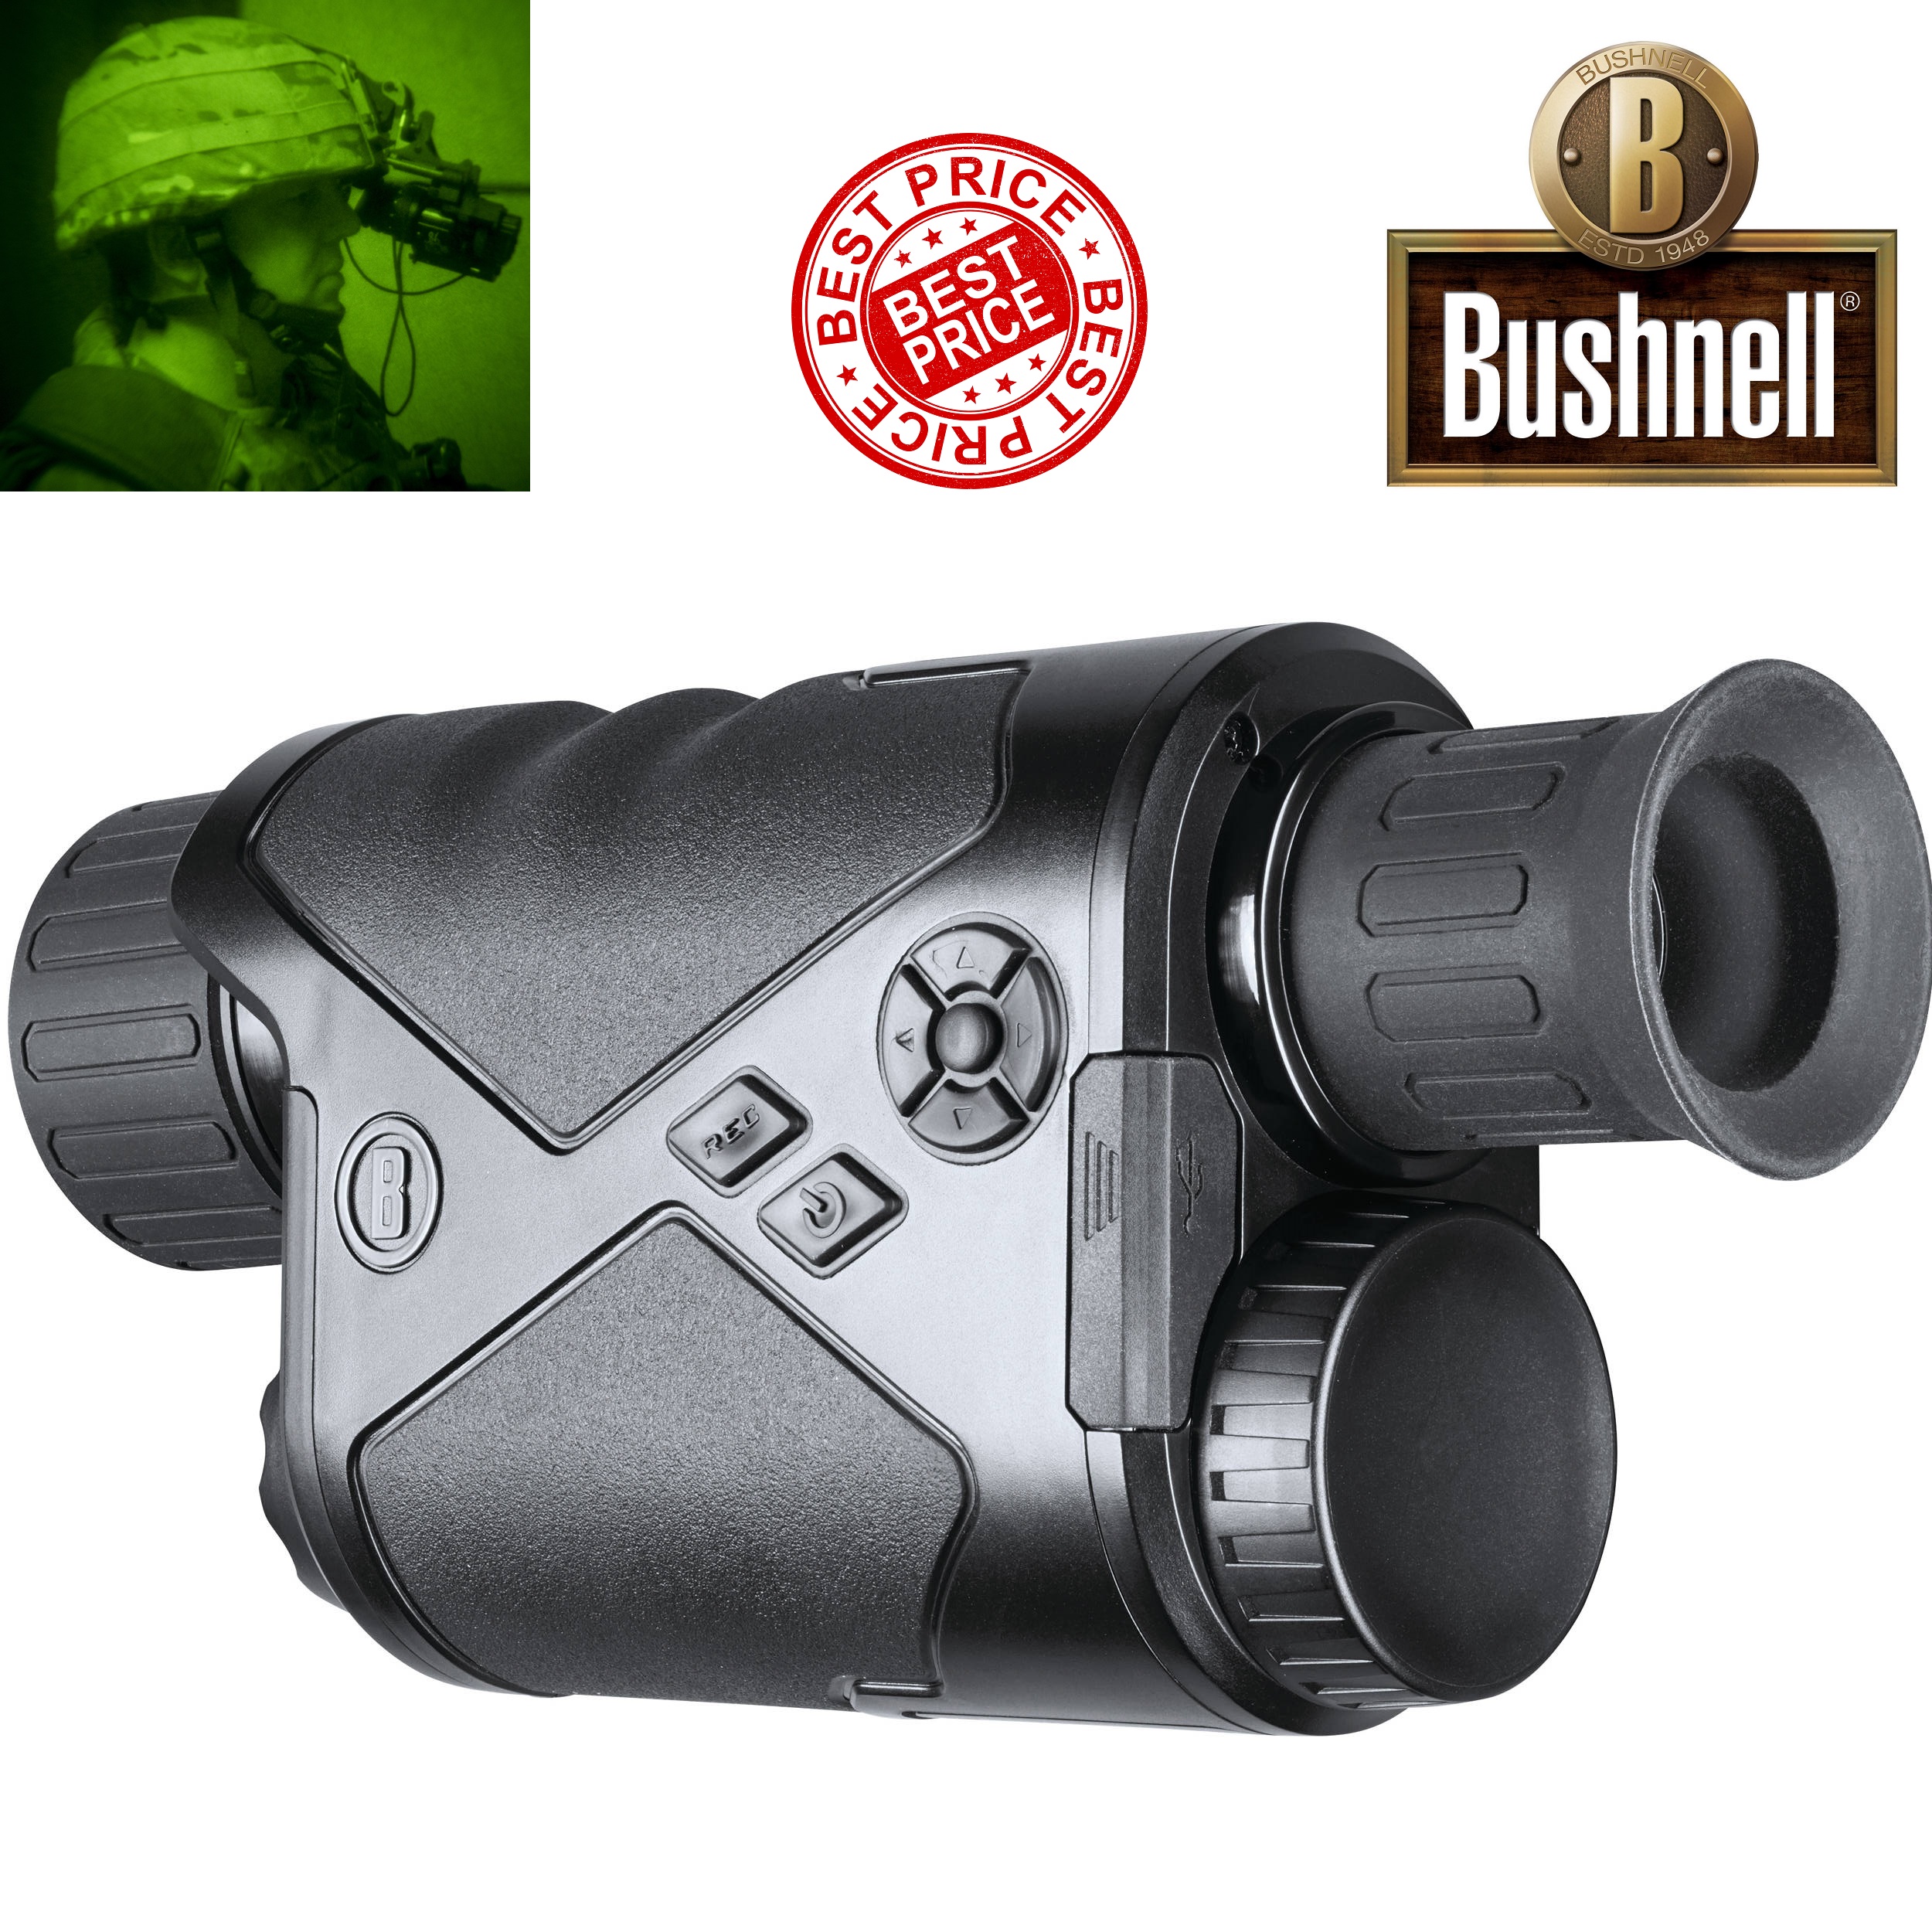 Bushnell 6x50 Equinox Z2 Digital Night Vision Monocular